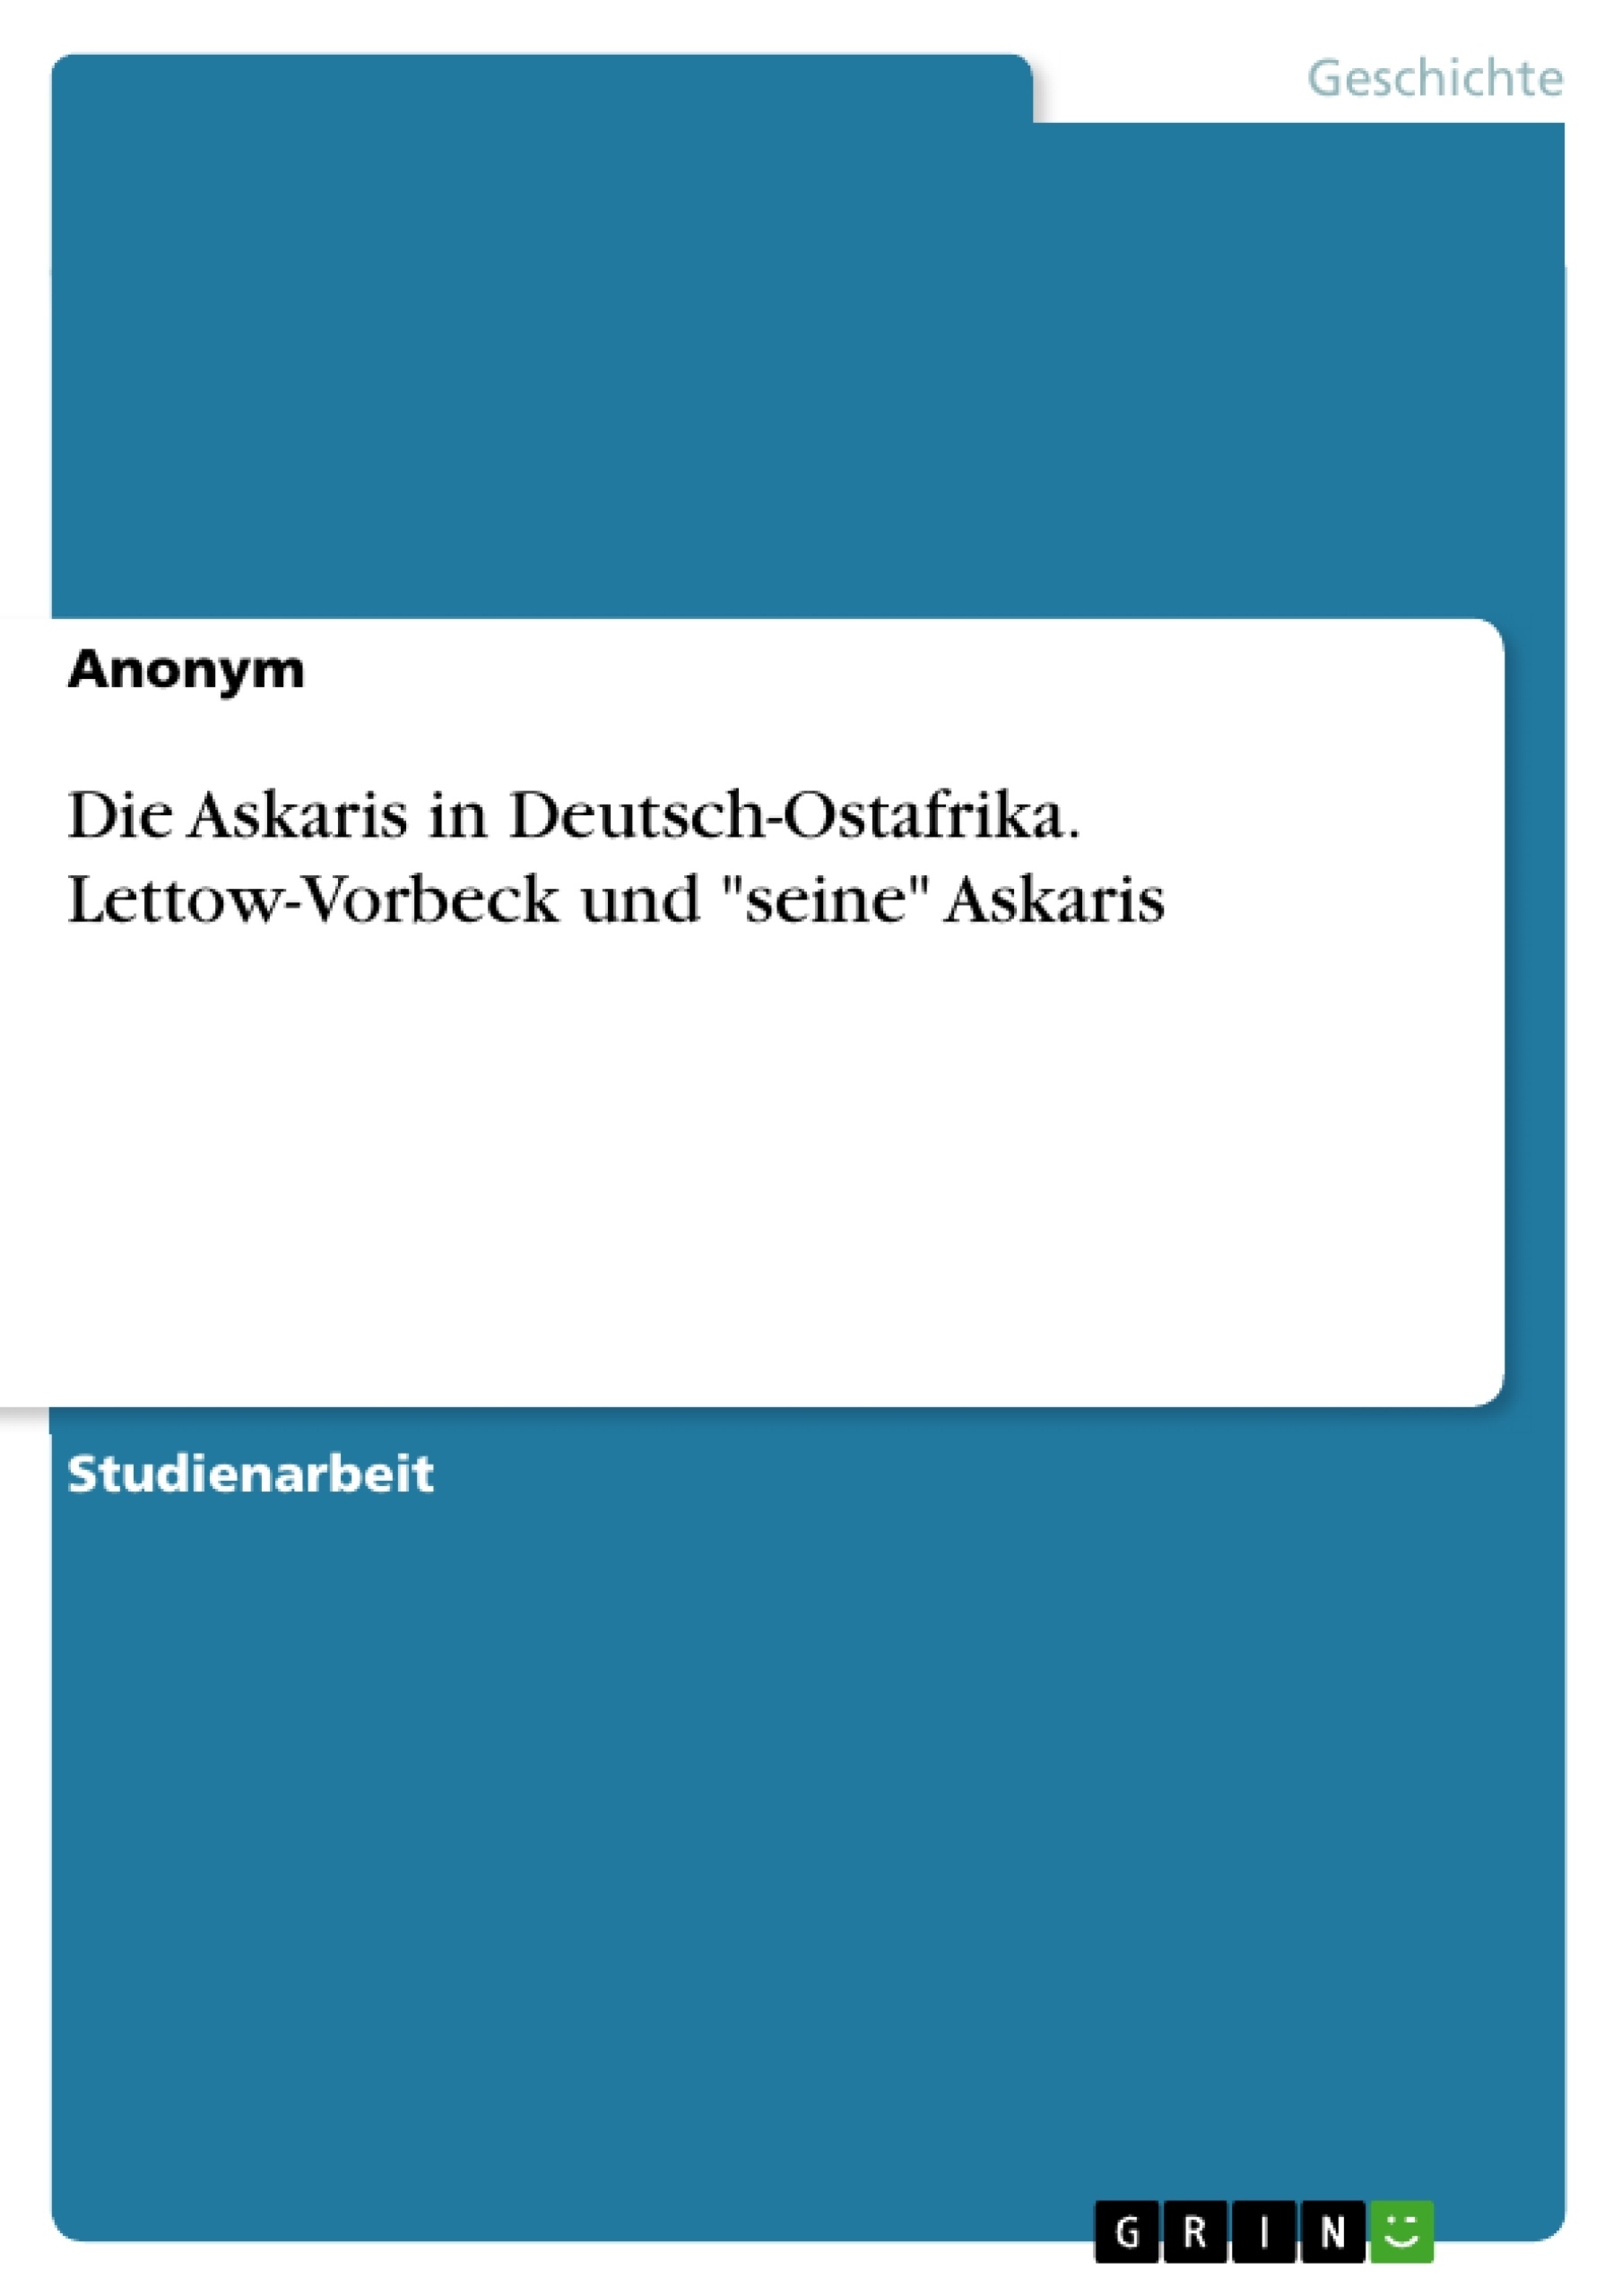 Title: Die Askaris in Deutsch-Ostafrika. Lettow-Vorbeck und "seine" Askaris